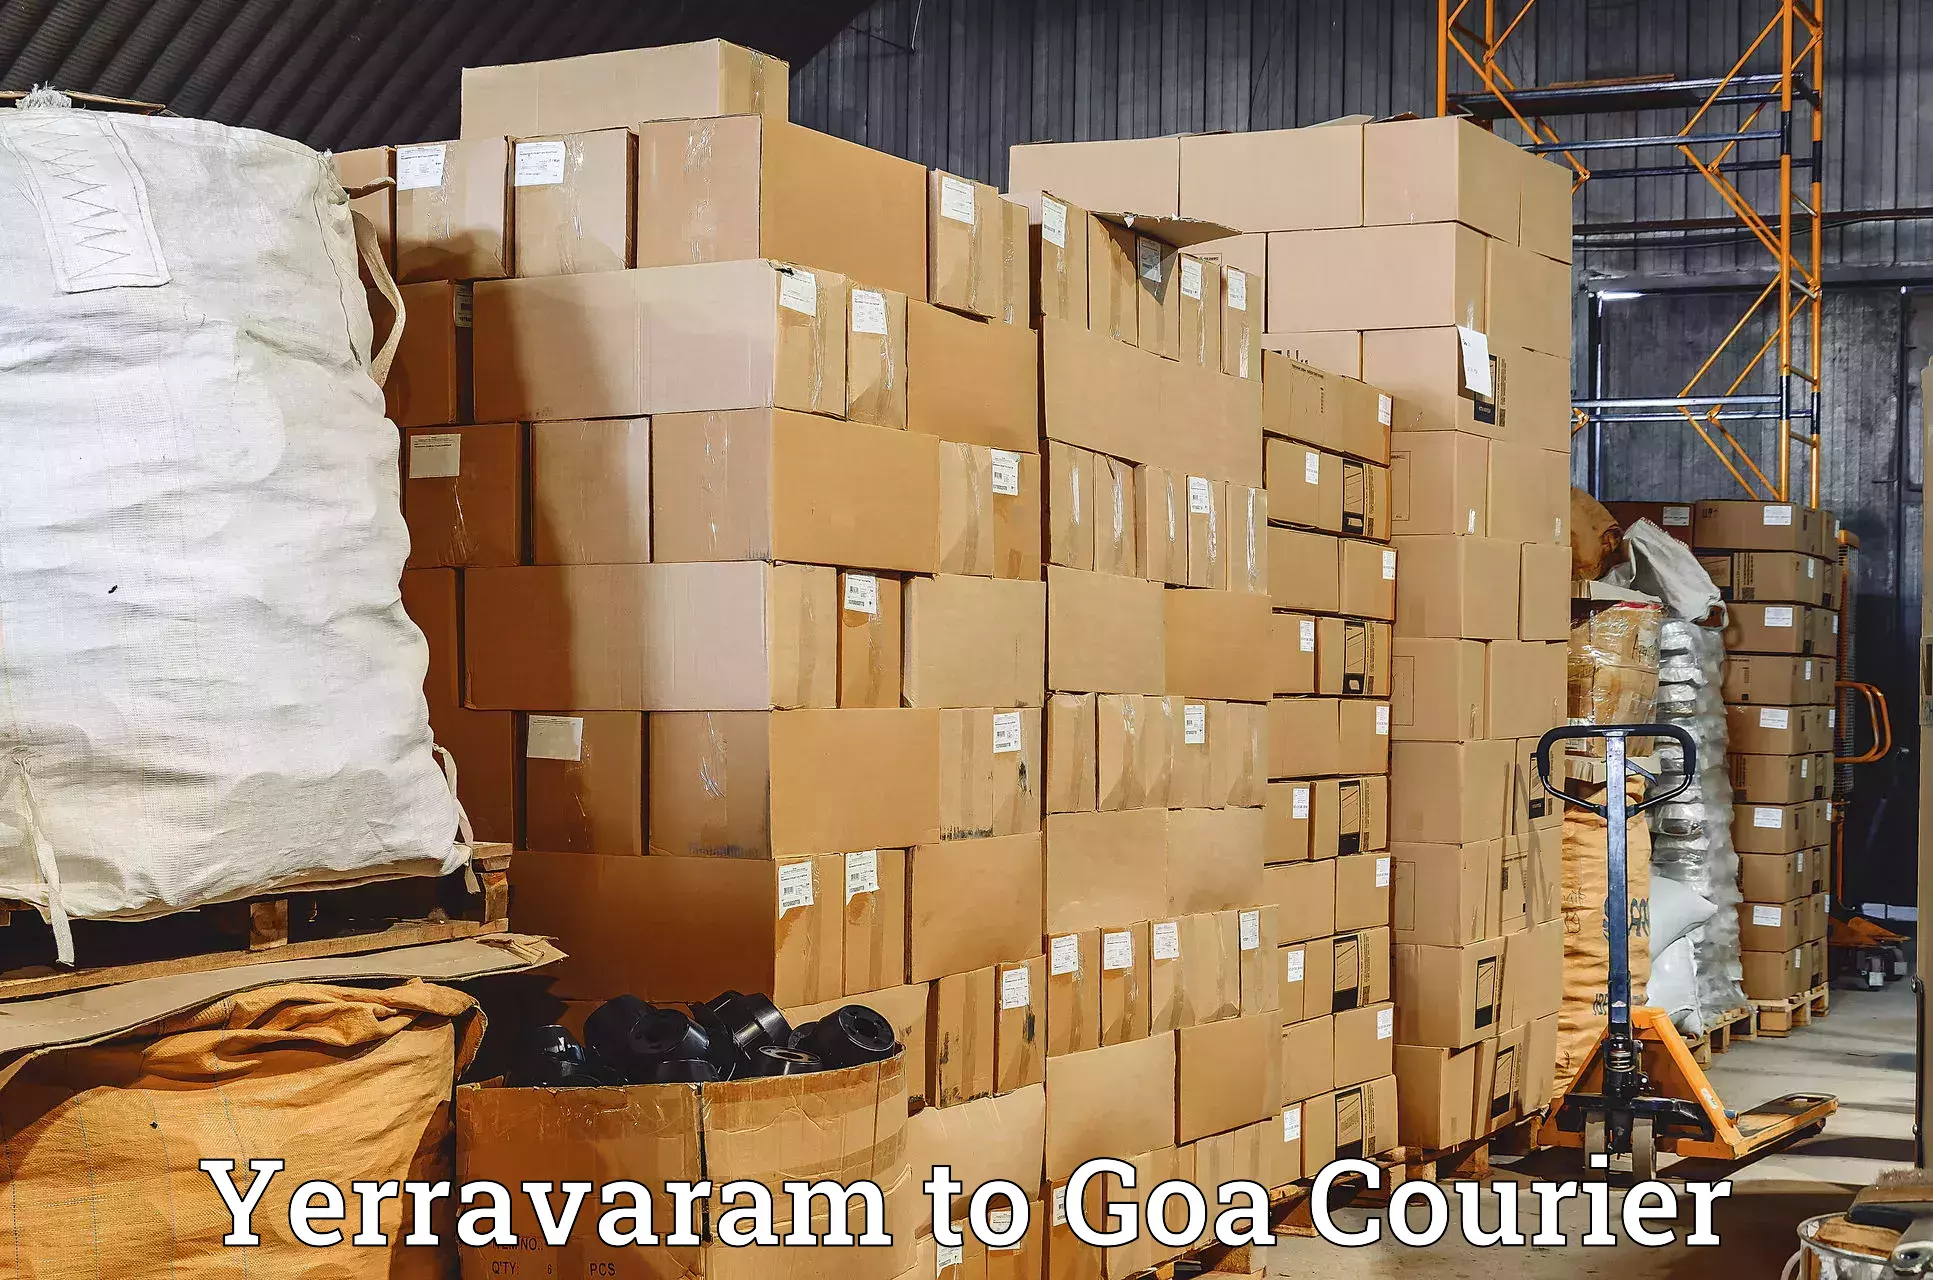 Global shipping solutions Yerravaram to Panaji